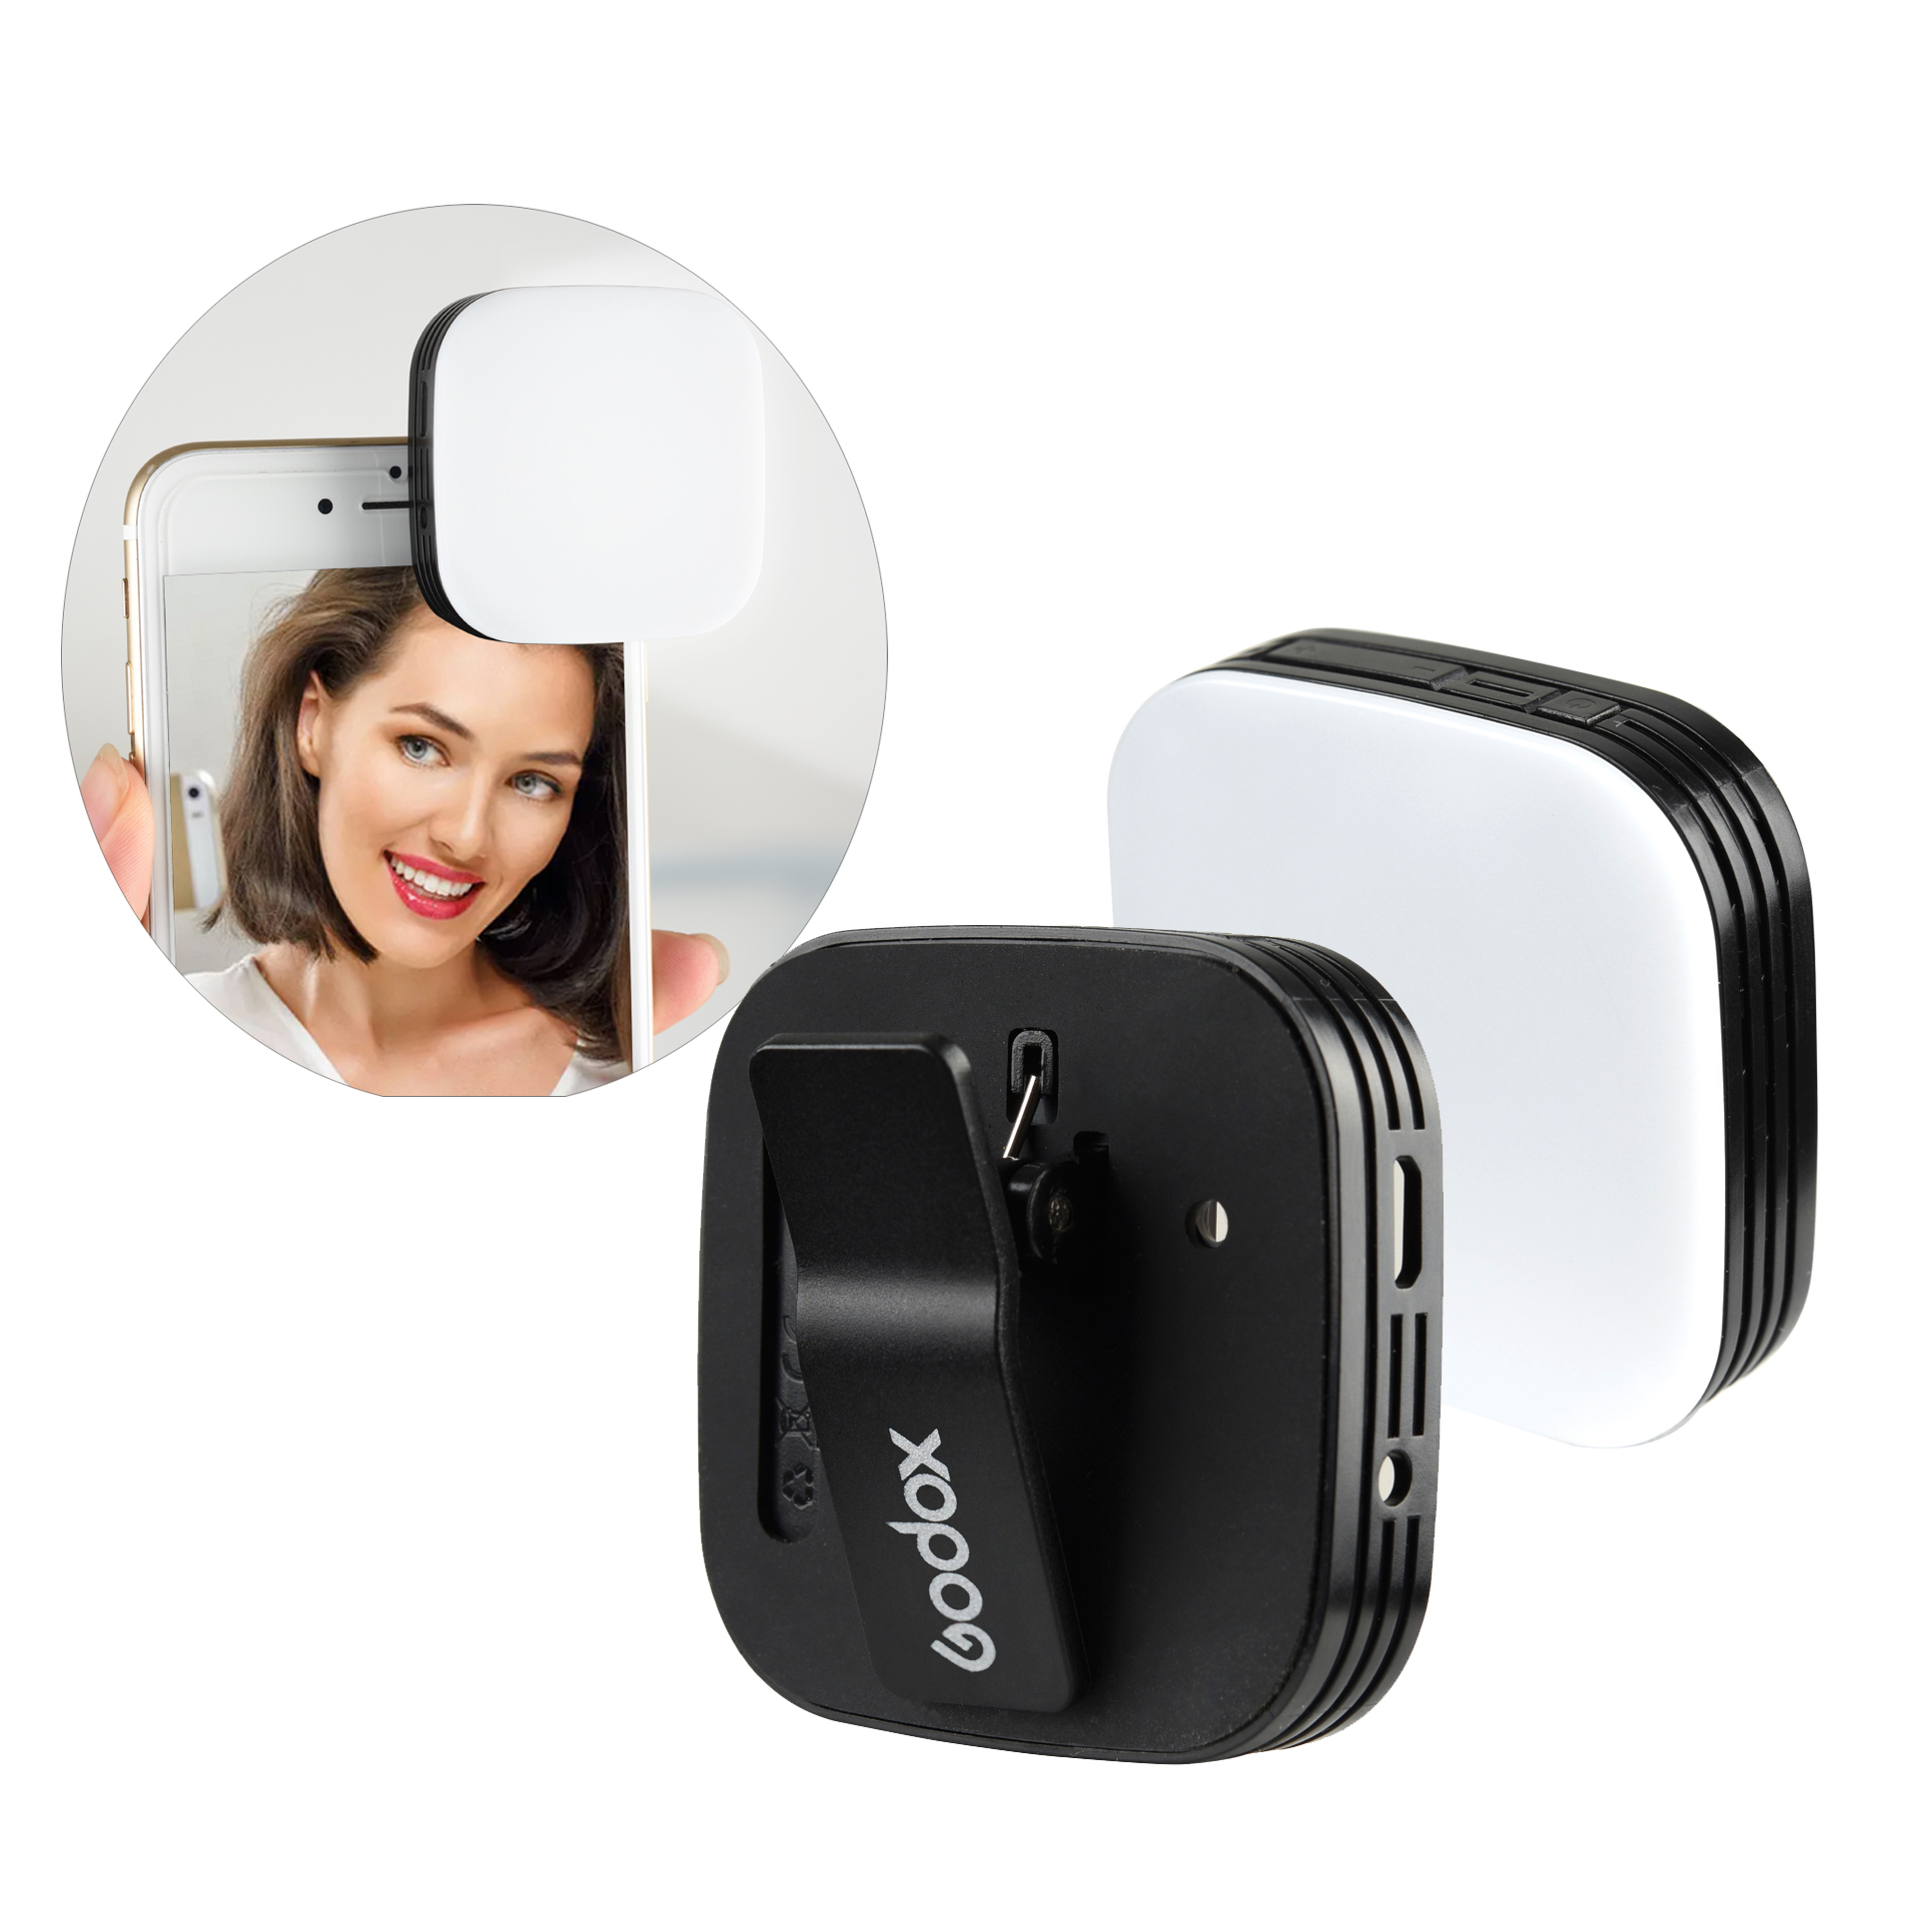 Godox Mini Draagbare Selfie Flash Ledm32 Camera 32 LED Video Fill Light CRI95 met ingebouwde batterij dimbare helderheid voor telefoonfotografie